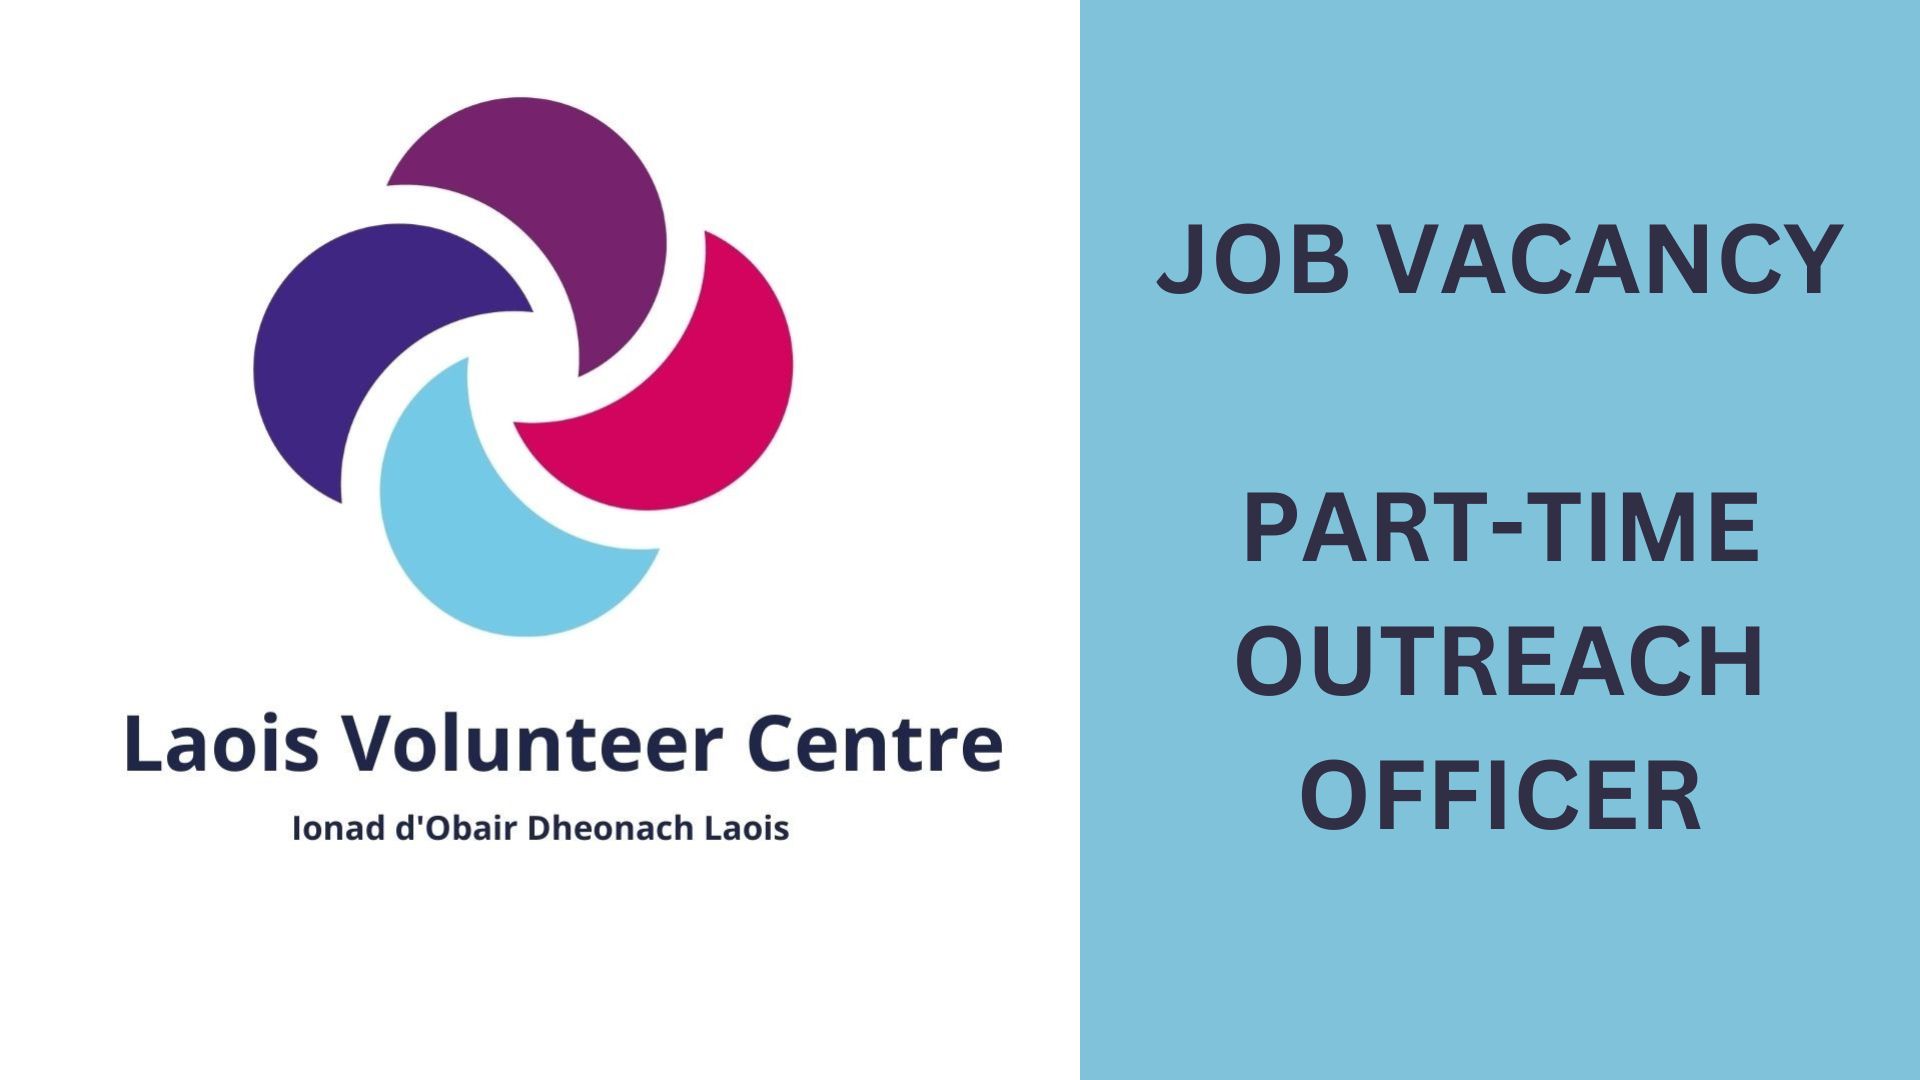 Laois Volunteer Centre job ad appearing on LaoisToday